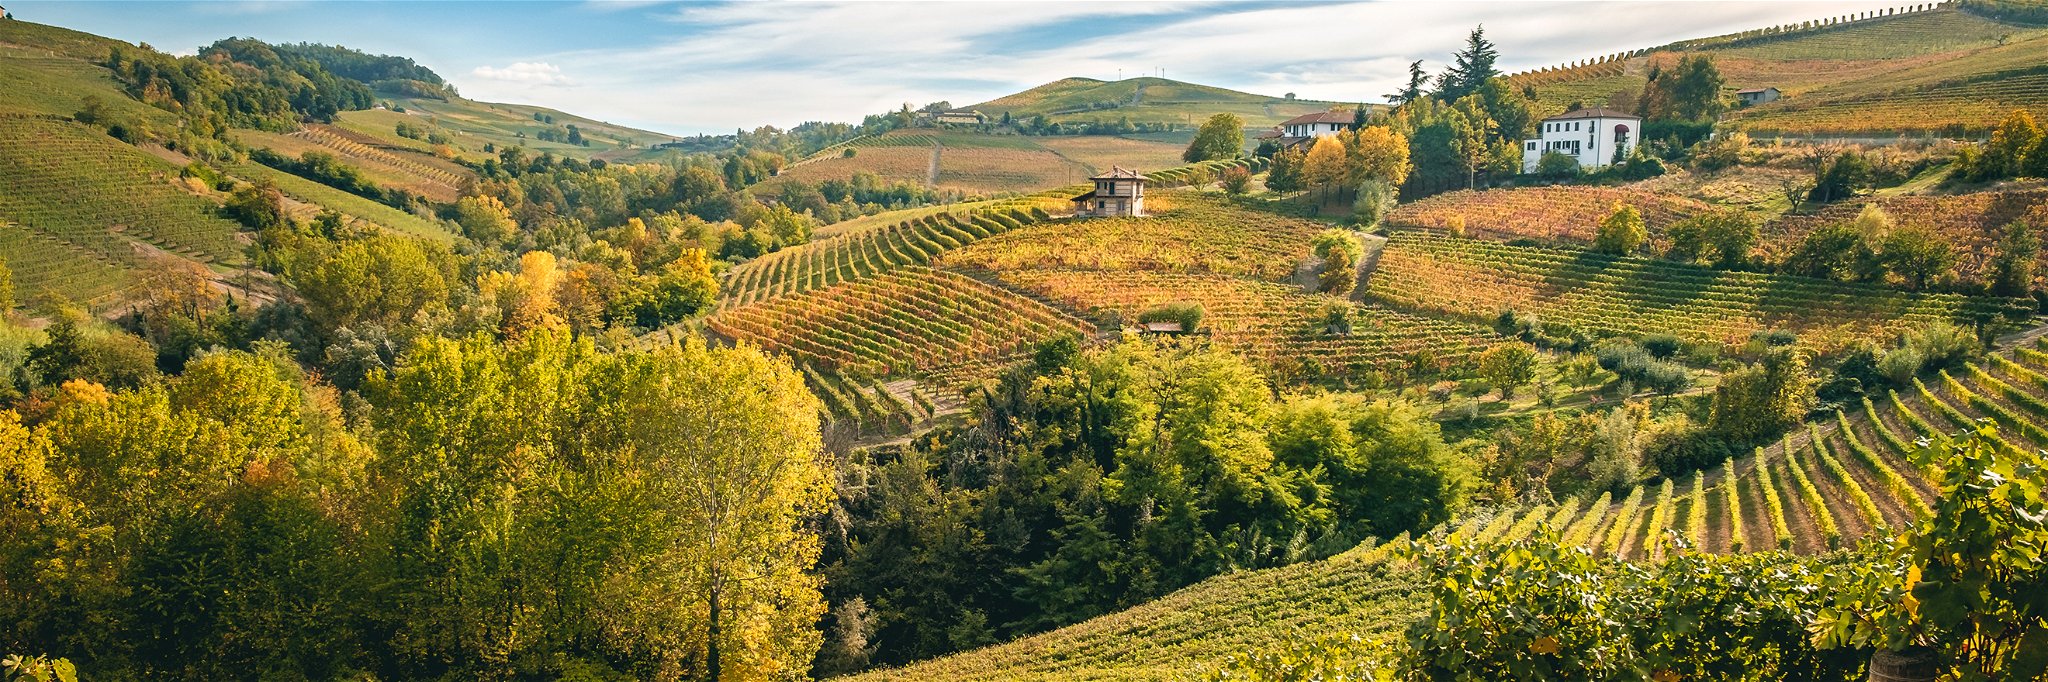 Malerischer Herbst in Barolo: Oben färbt der Wein sich bunt, unter der Erde wächst die weiße Trüffel.